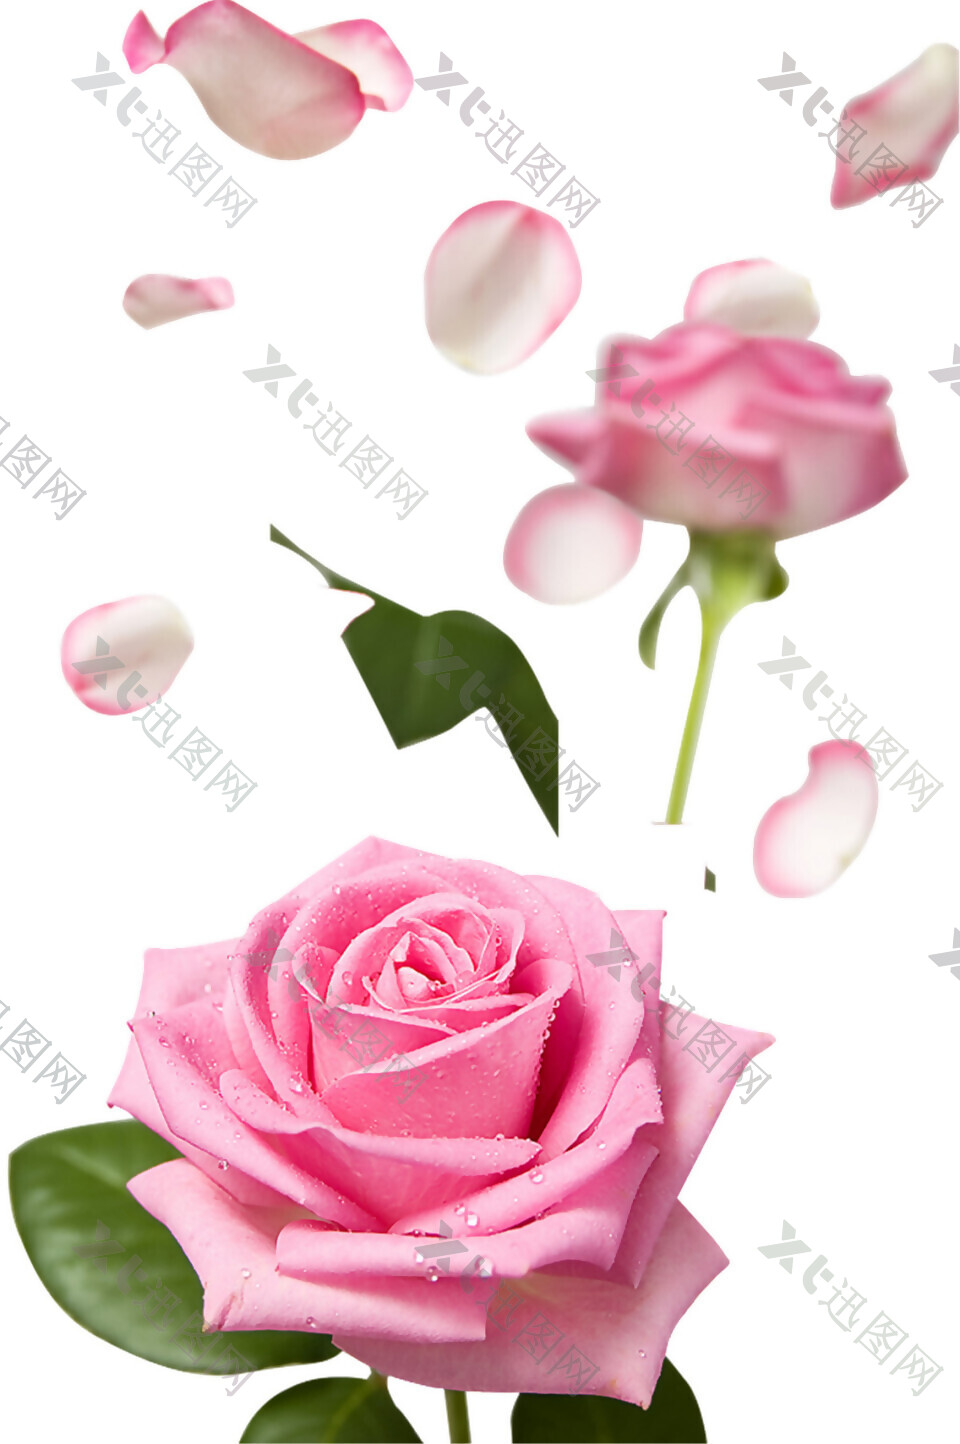 唯美粉色玫瑰花朵图案